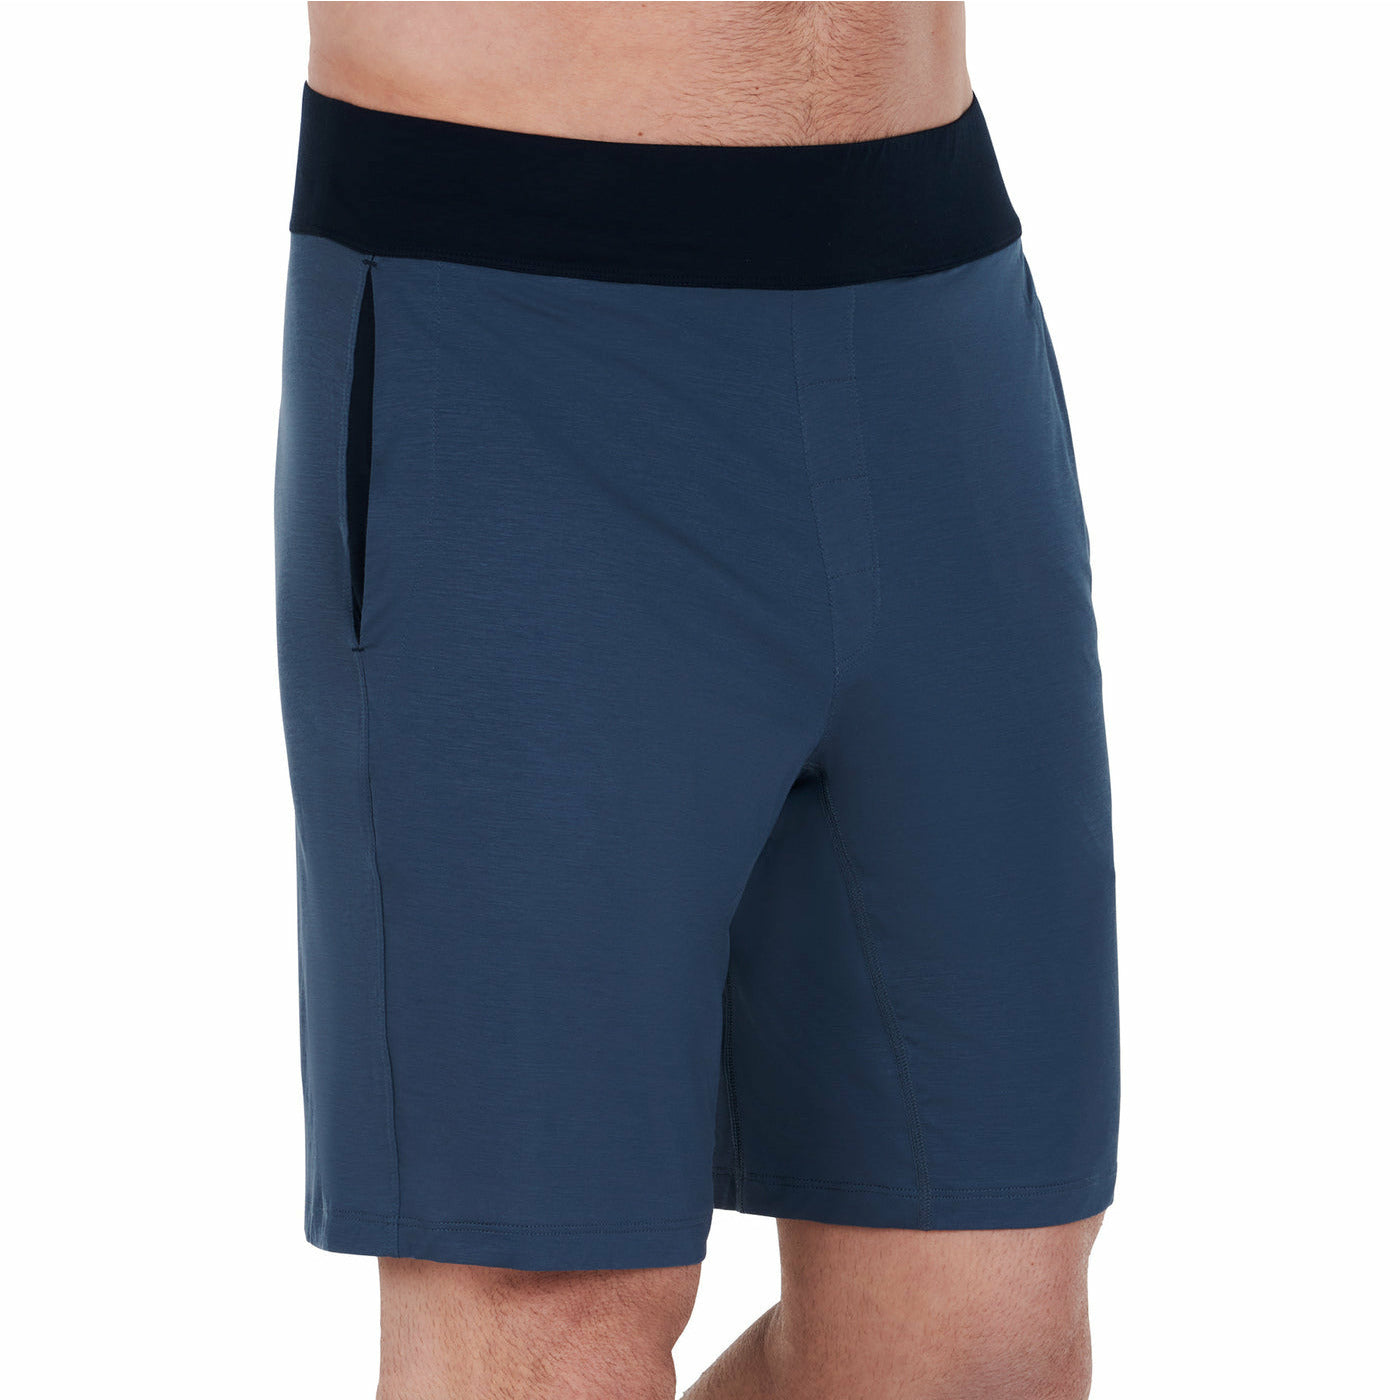 Pyjama Shorts Man - Cooling - sleeboo